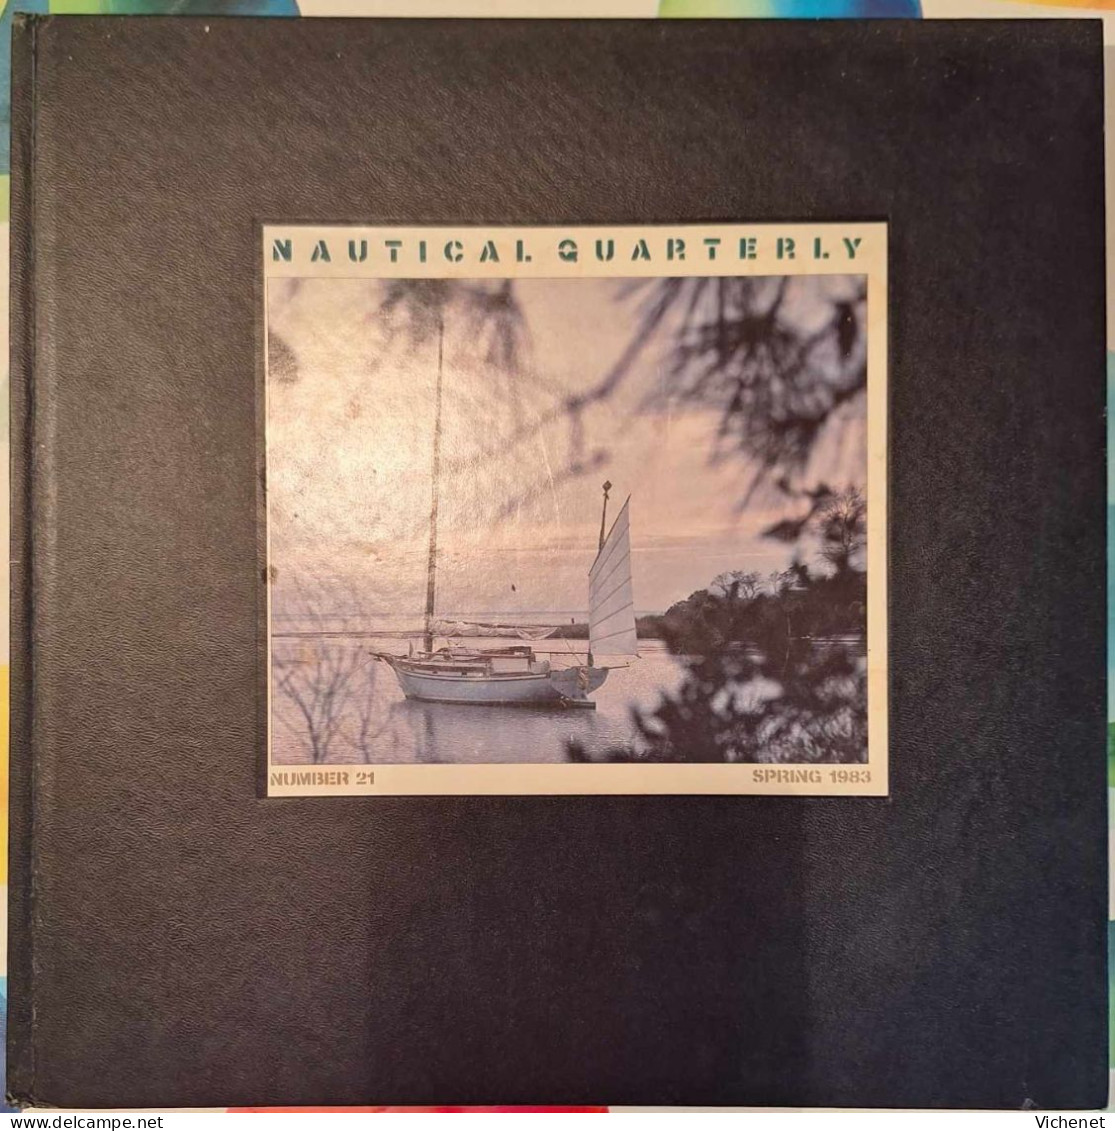 Nautical Quaterly - Number 21 - Spring 1983 - Viaggi/Esplorazioni